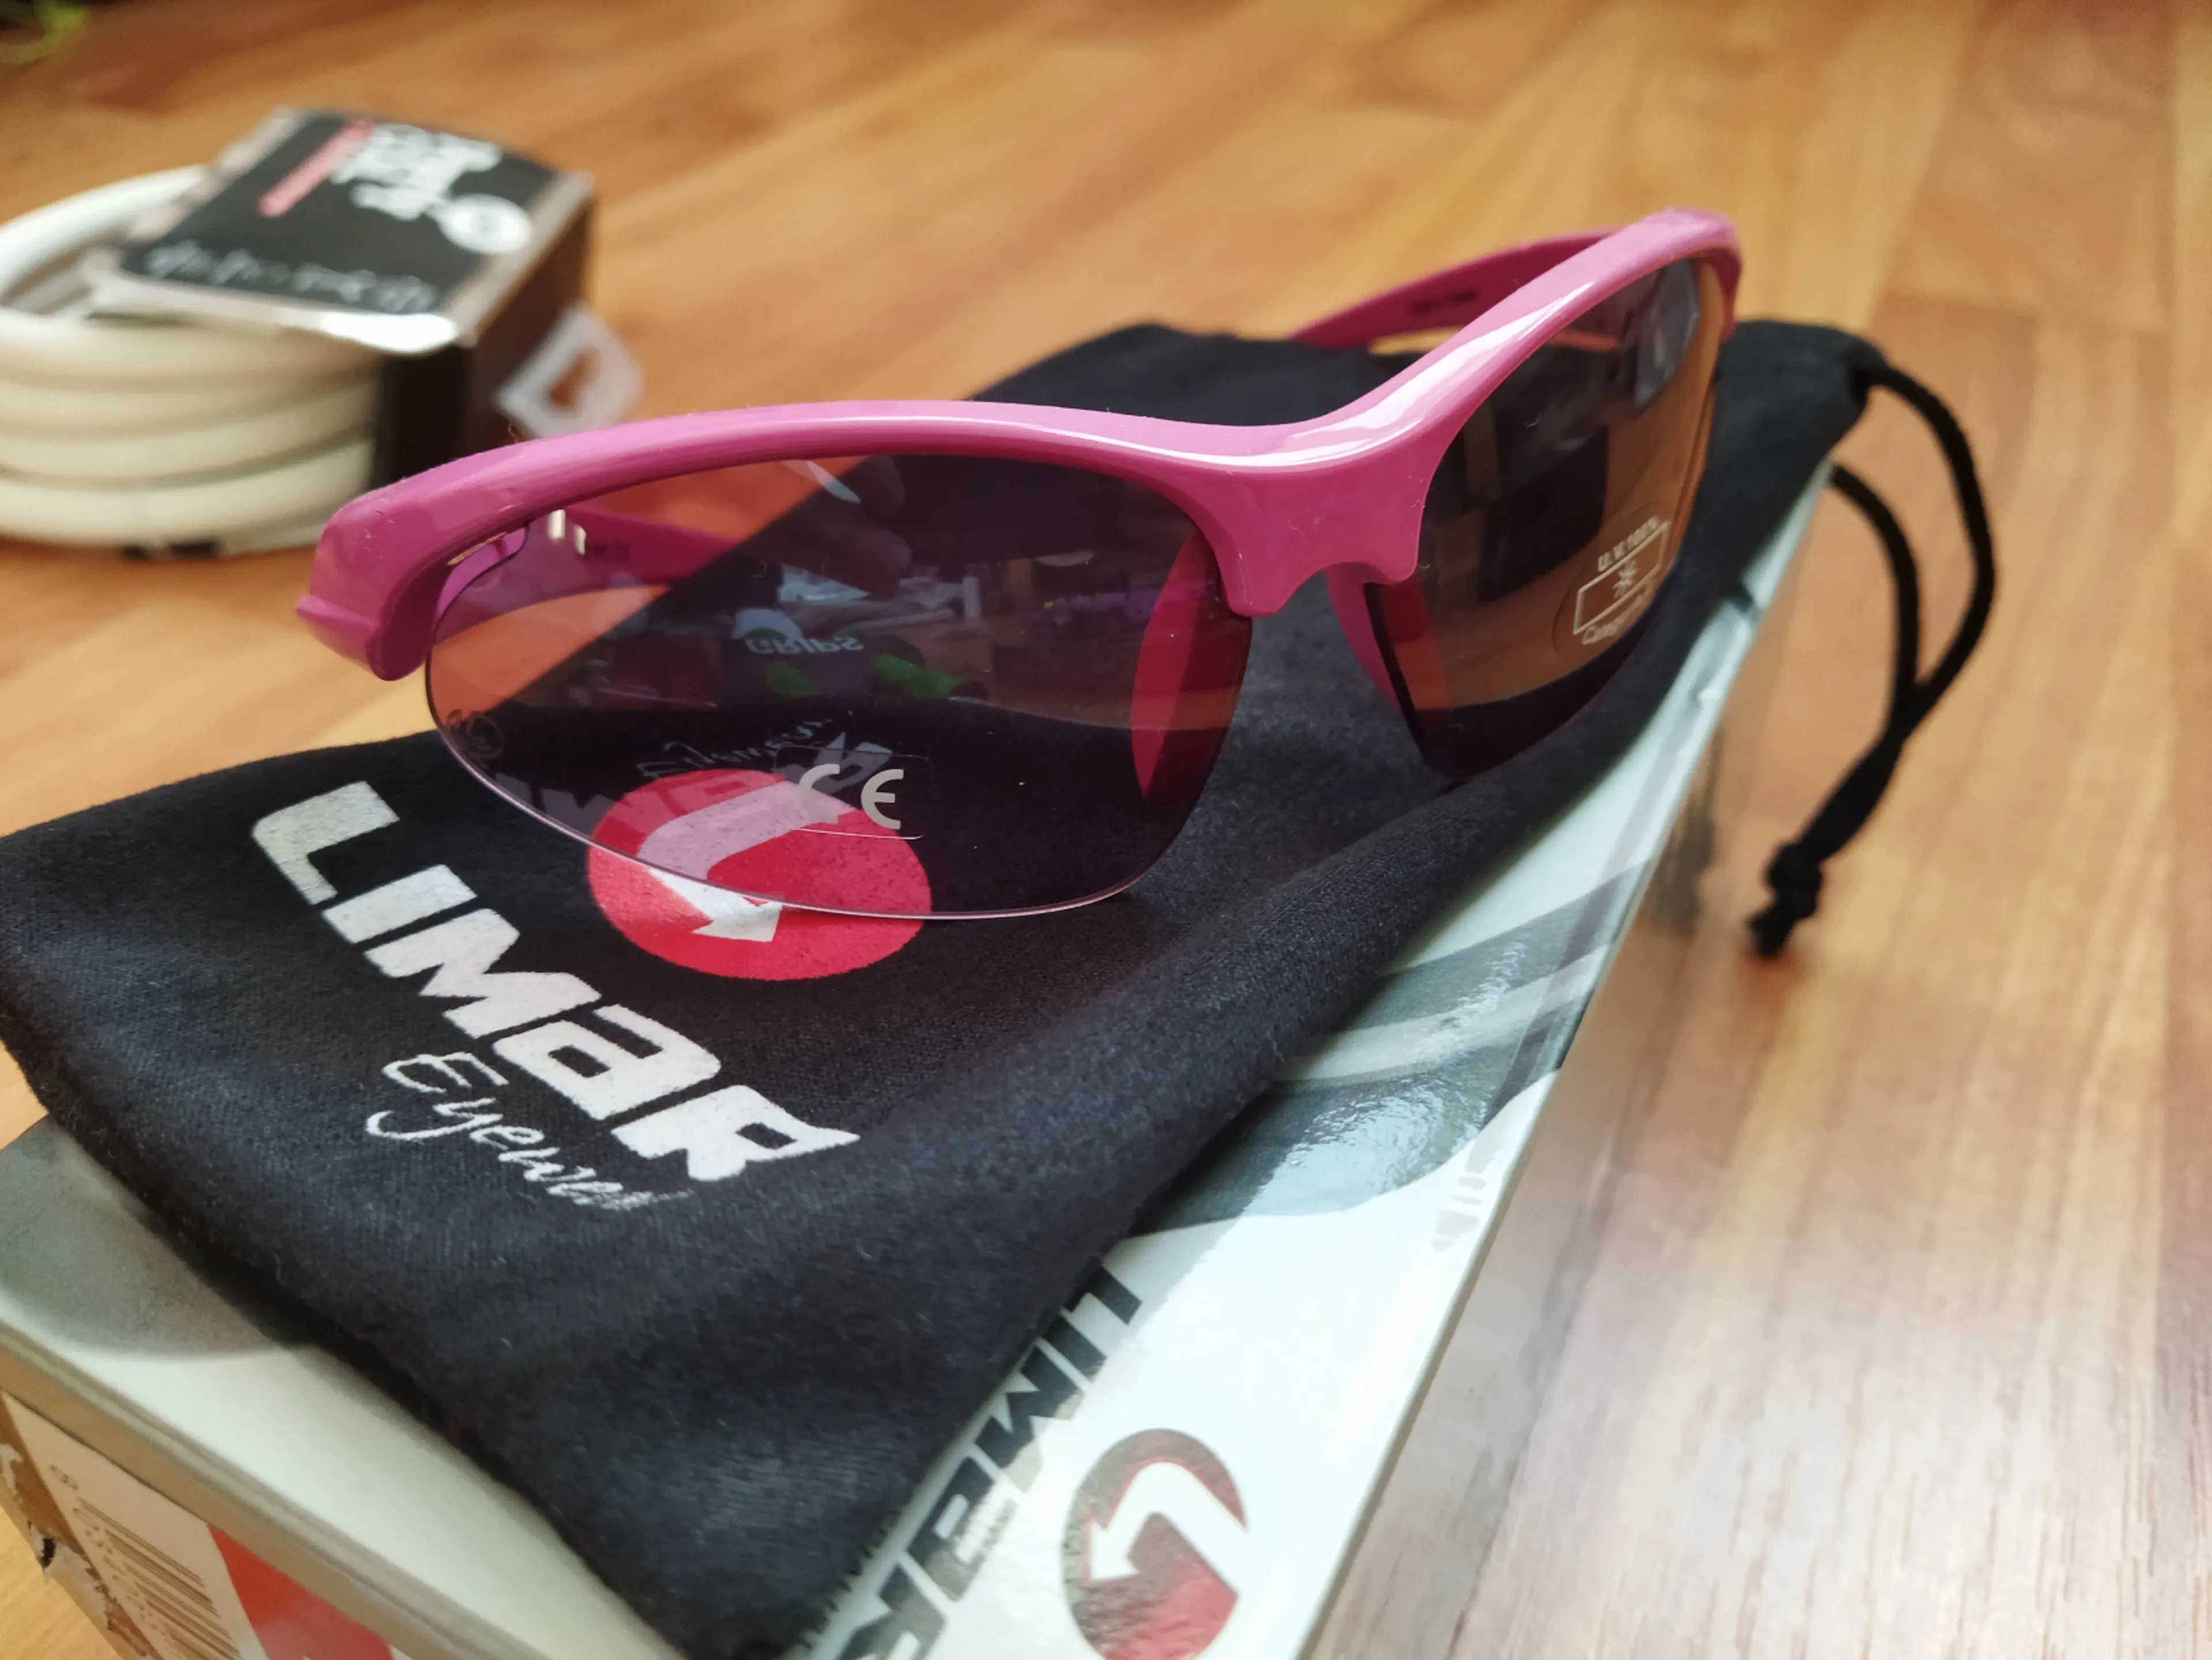 1. Ochelari sport Limar K2 roz